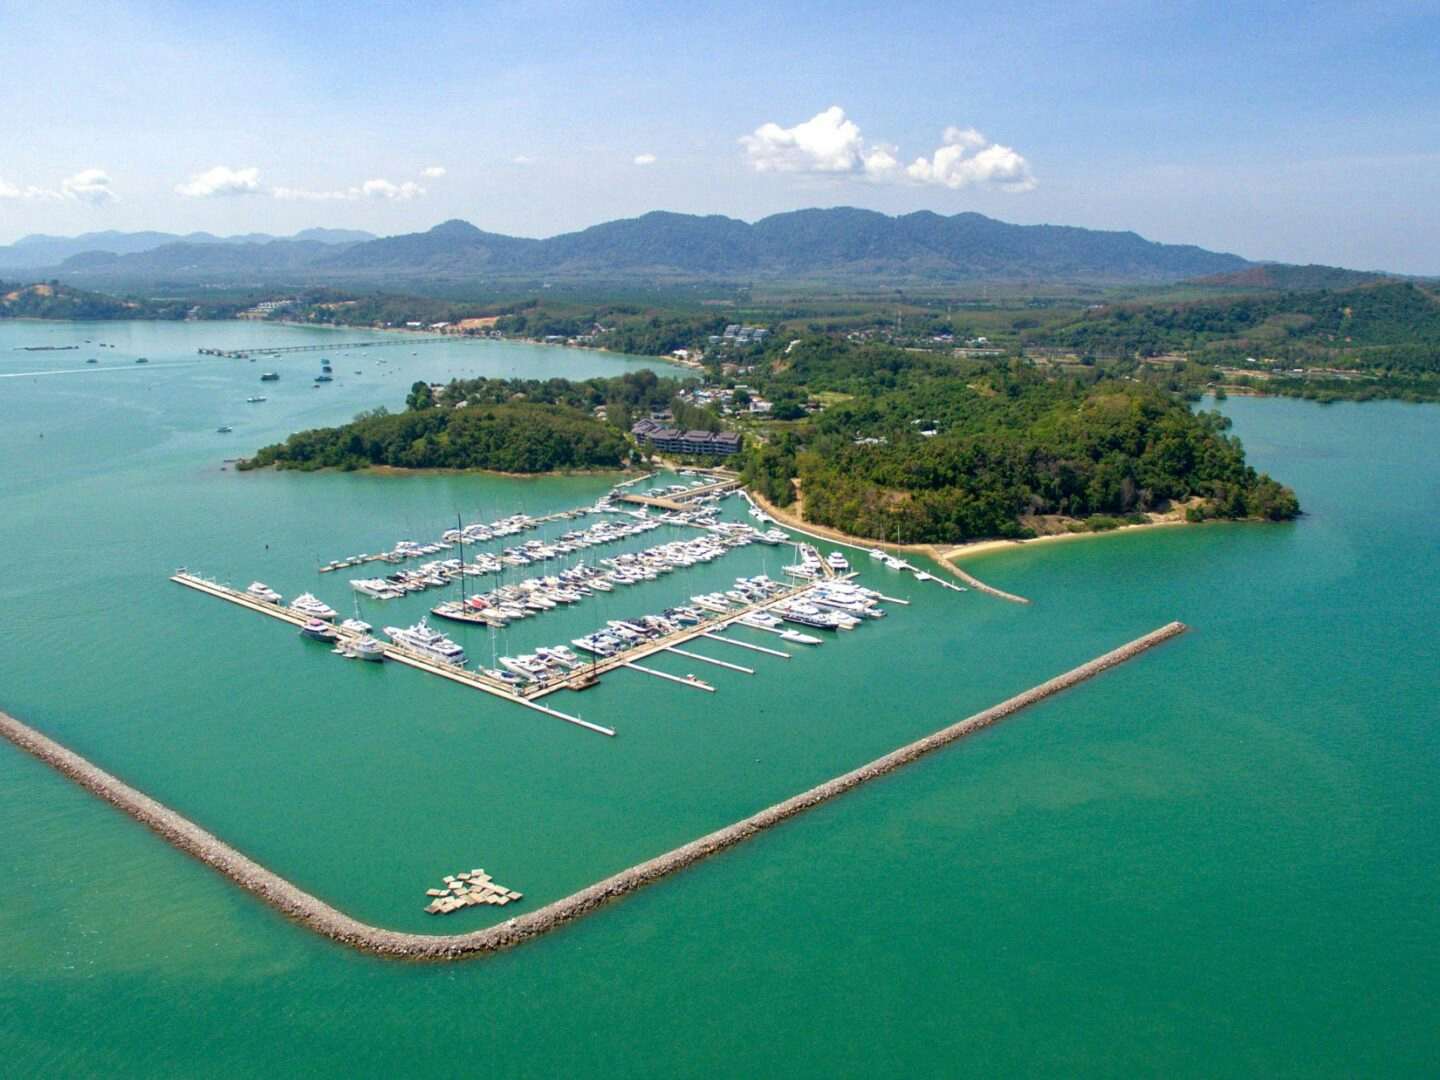 yacht brokers phuket thailand